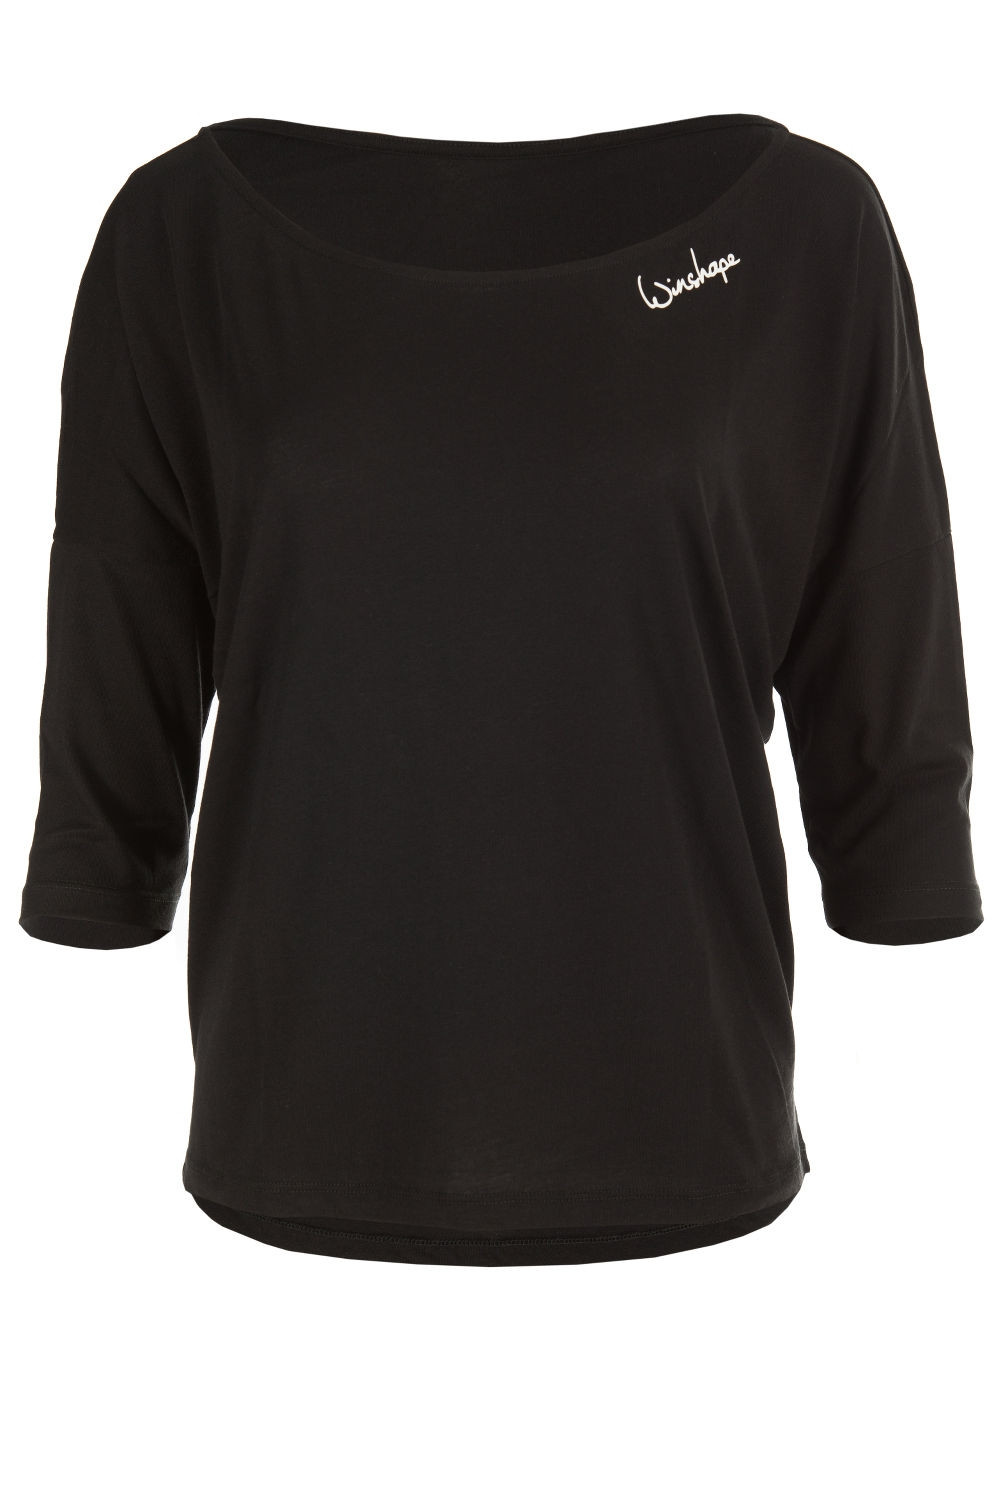 schwarz, Winshape Dance Shirt Ultra MCS001, leichtes Style Modal-3/4-Arm